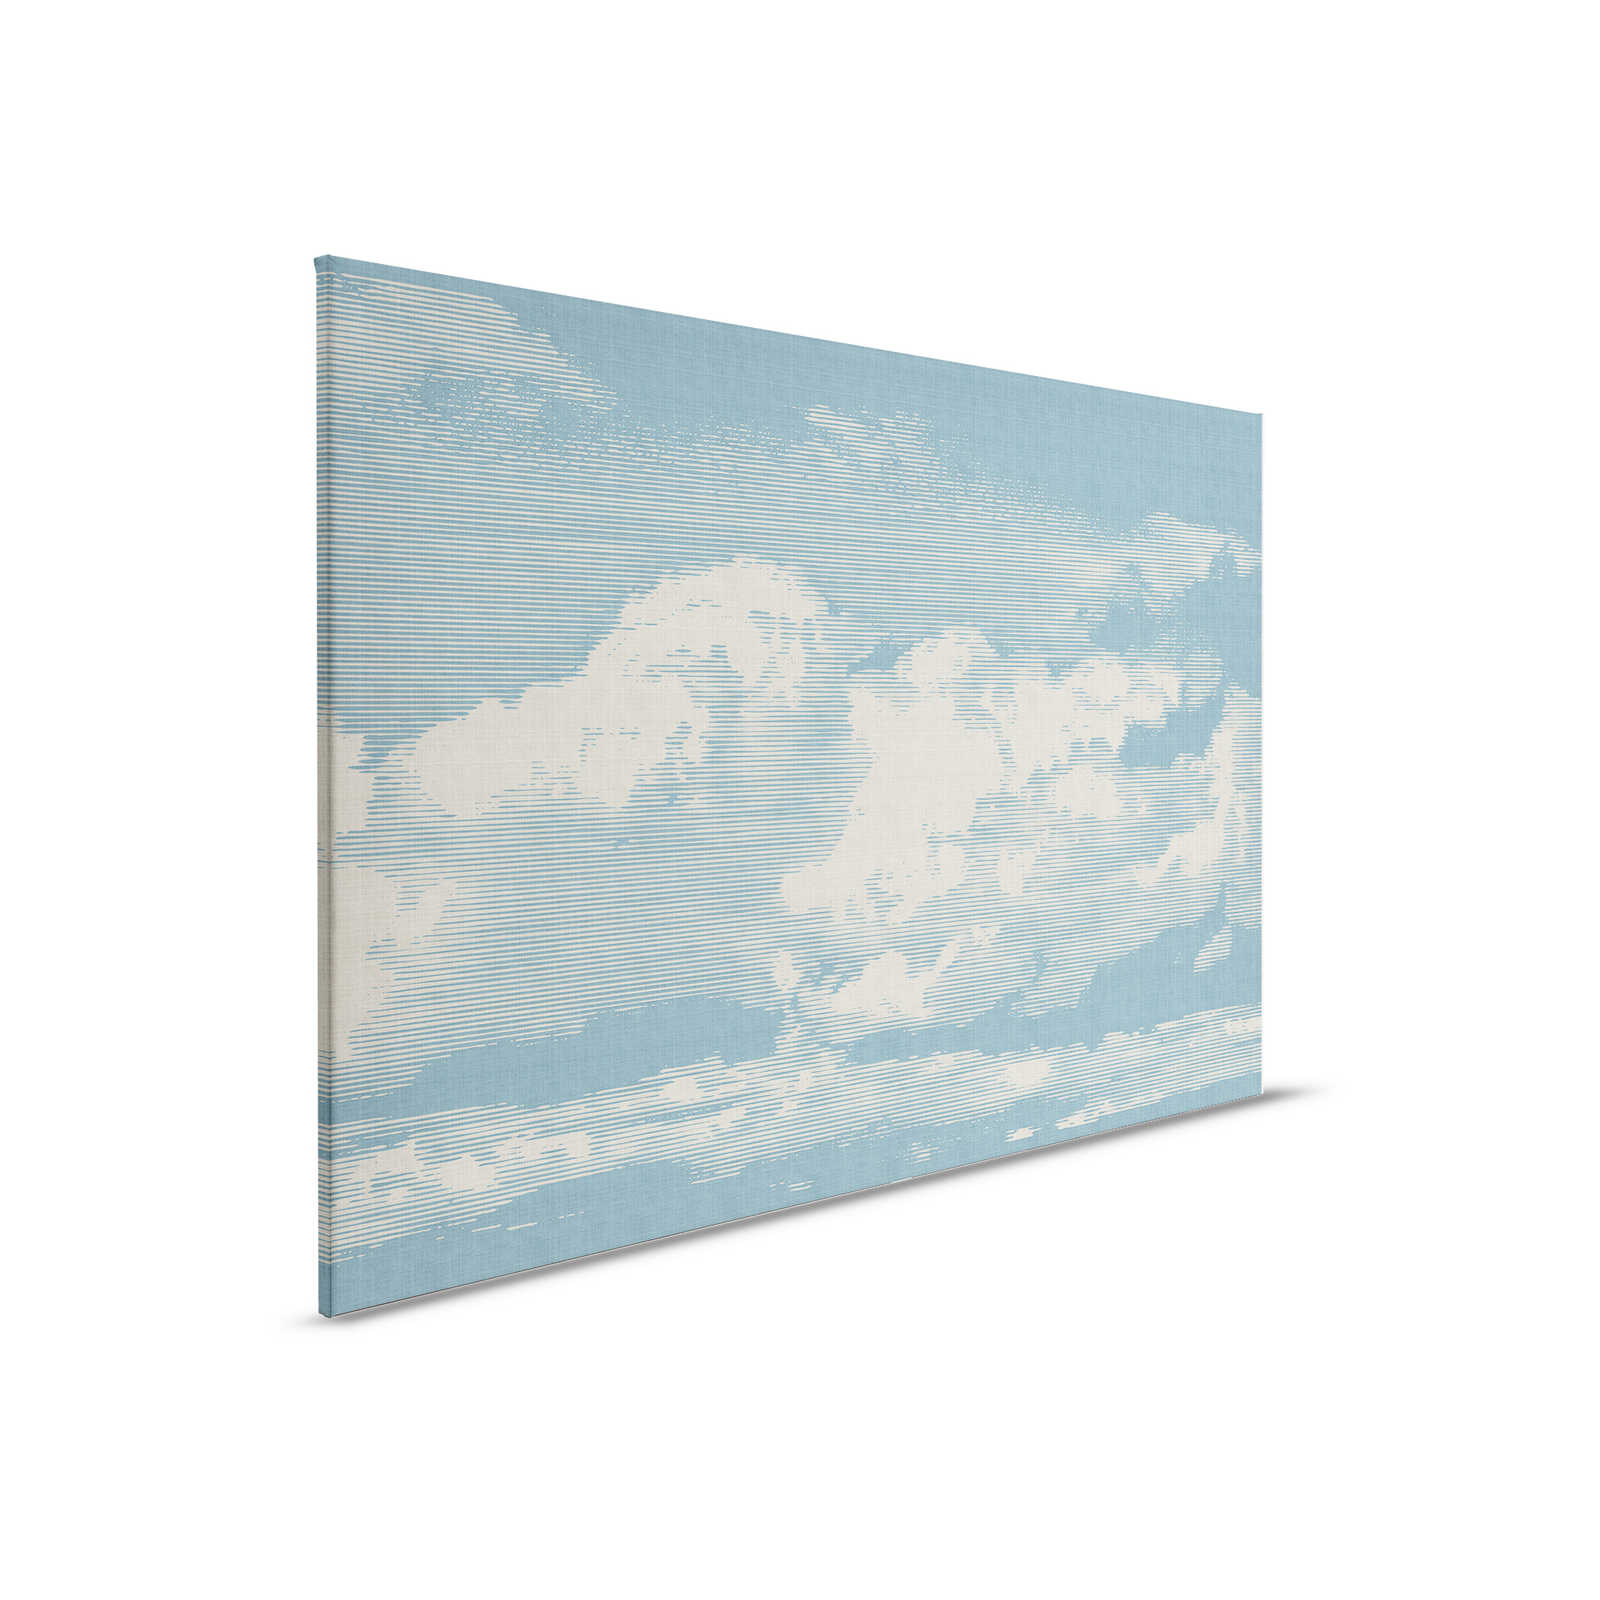 Nuvole 1 - Quadro su tela con motivo di nuvole in lino naturale - 0,90 m x 0,60 m
